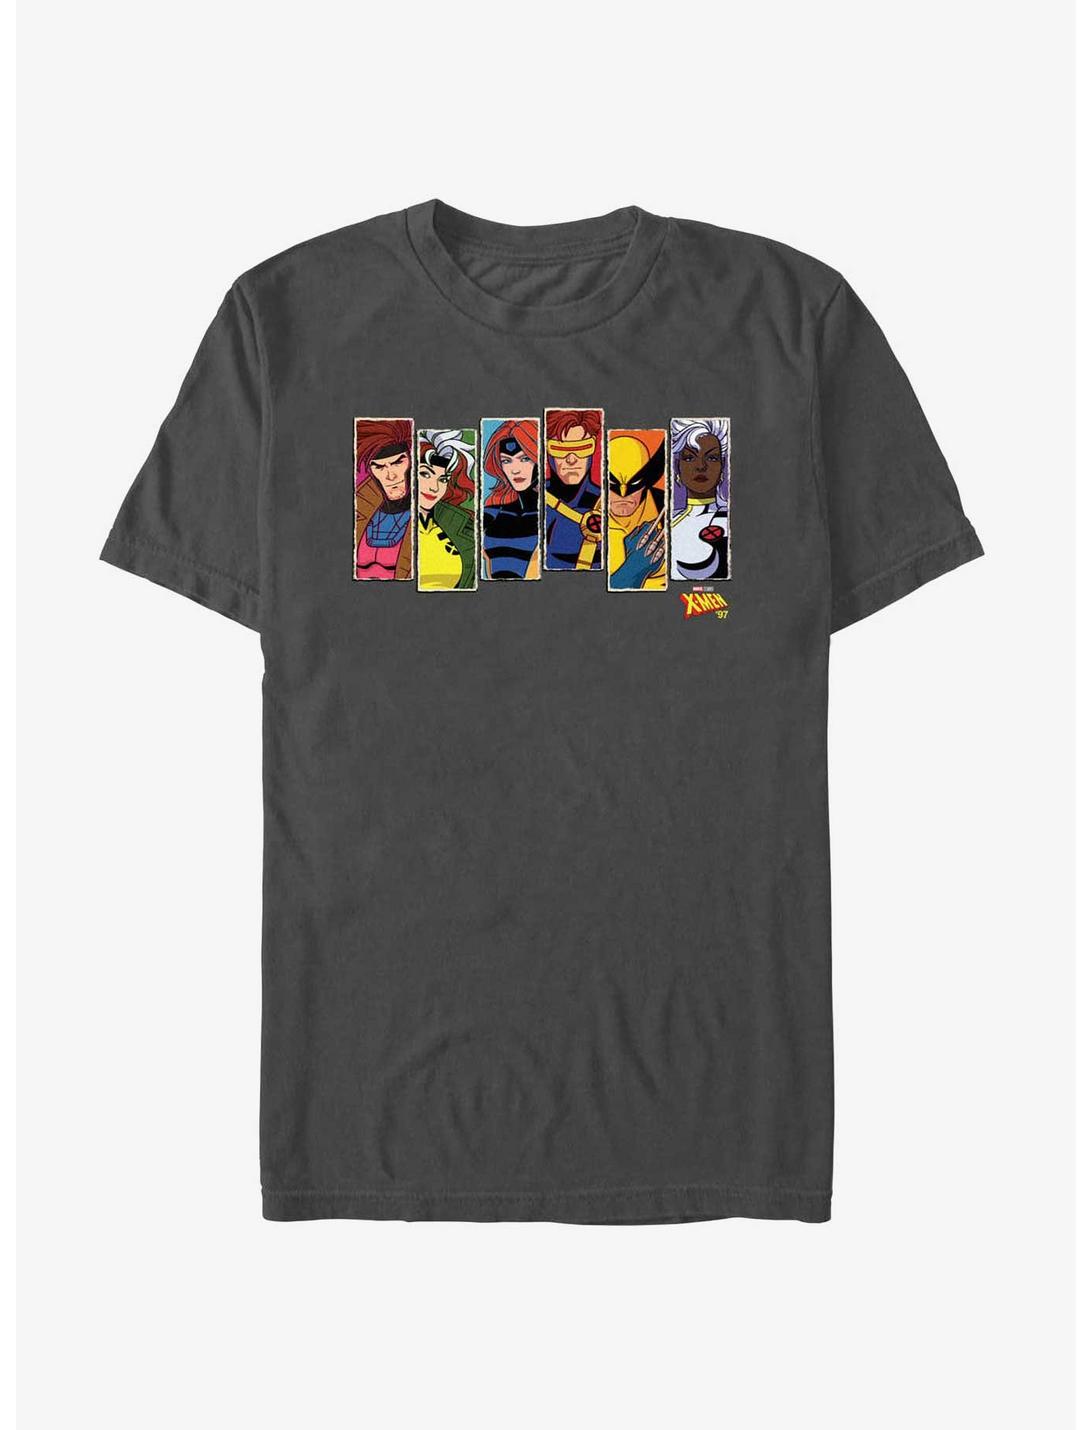 X-Men '97 Vertical Portraits T-Shirt, CHARCOAL, hi-res